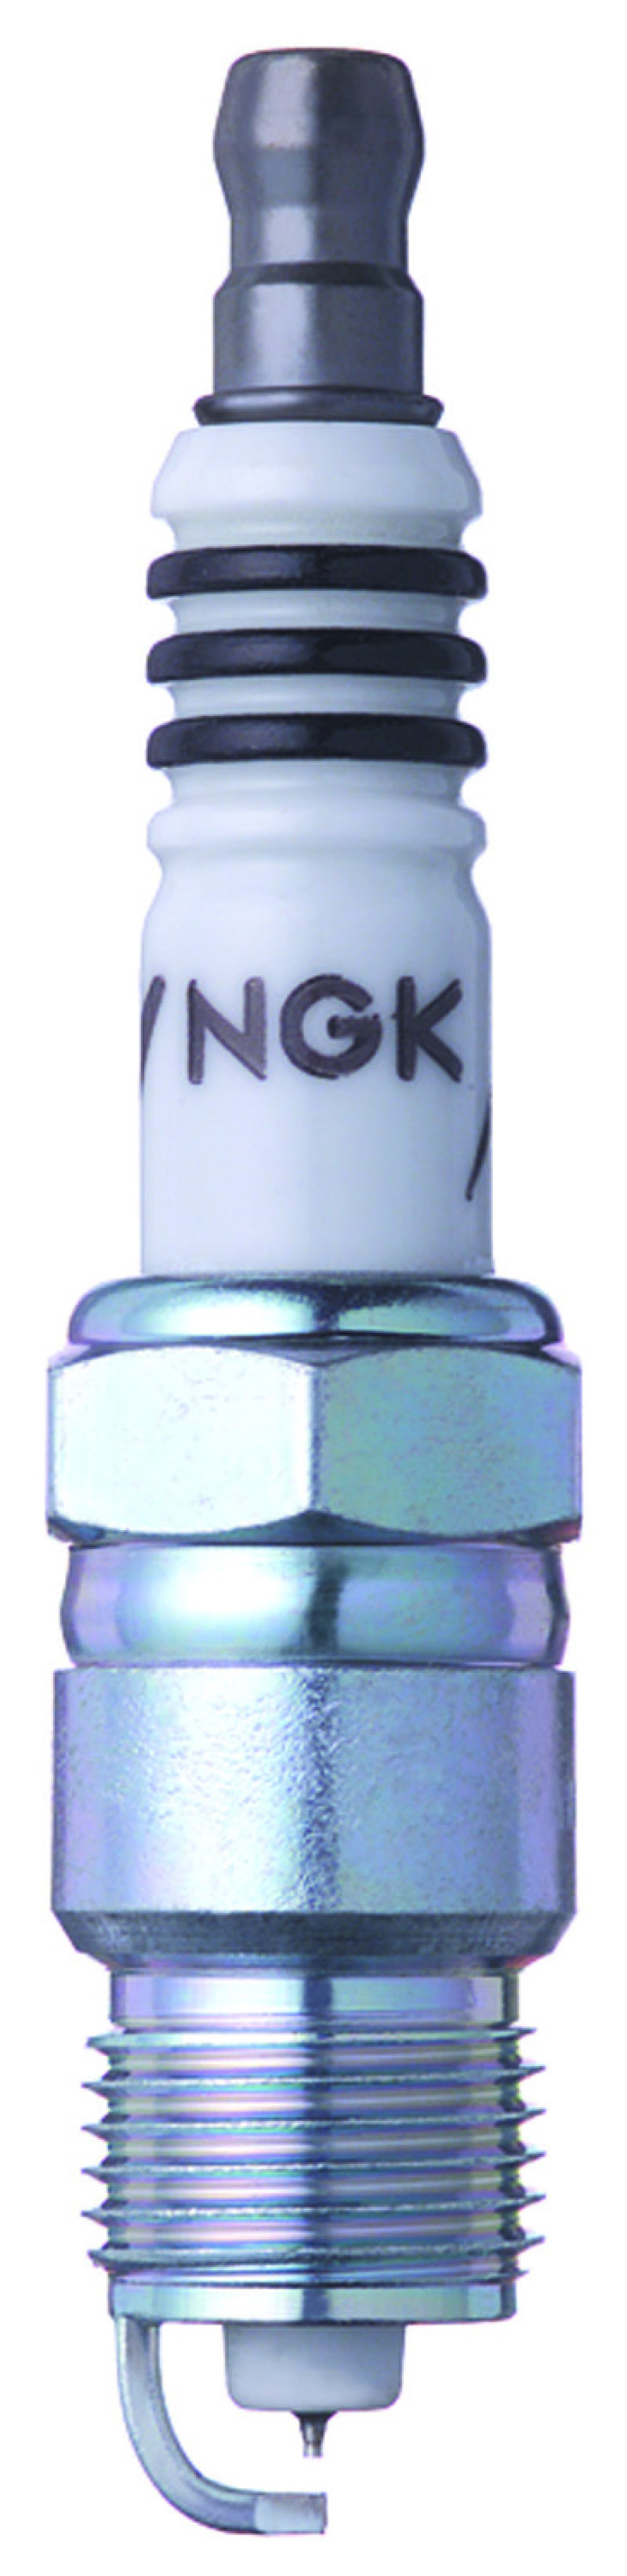 NGK IX Iridium Spark Plug Box of 4 (UR5IX) - 7177